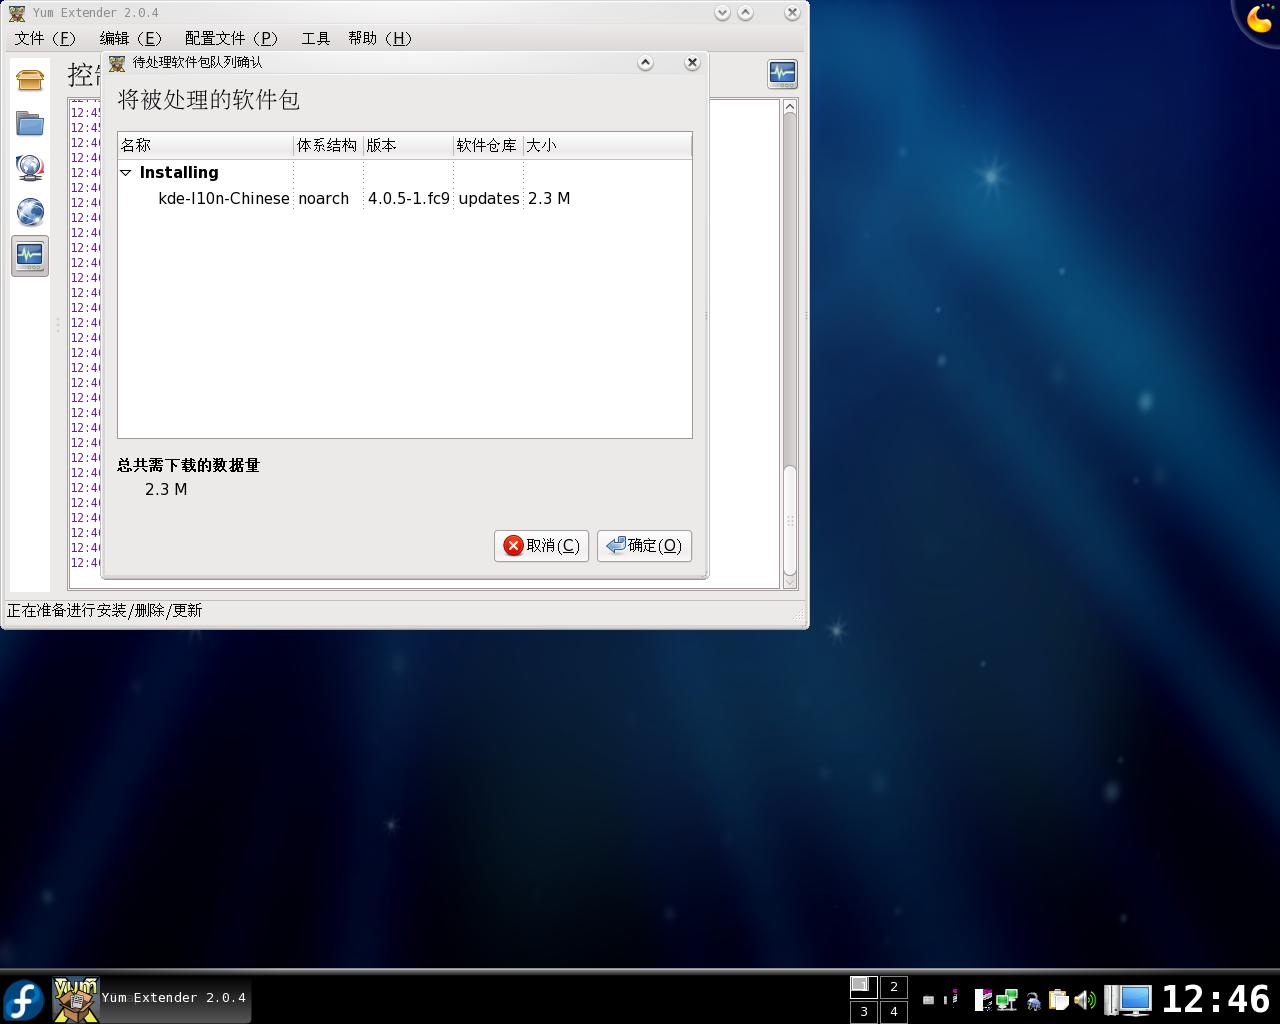 fedora9完全配置之KDE4中文設置